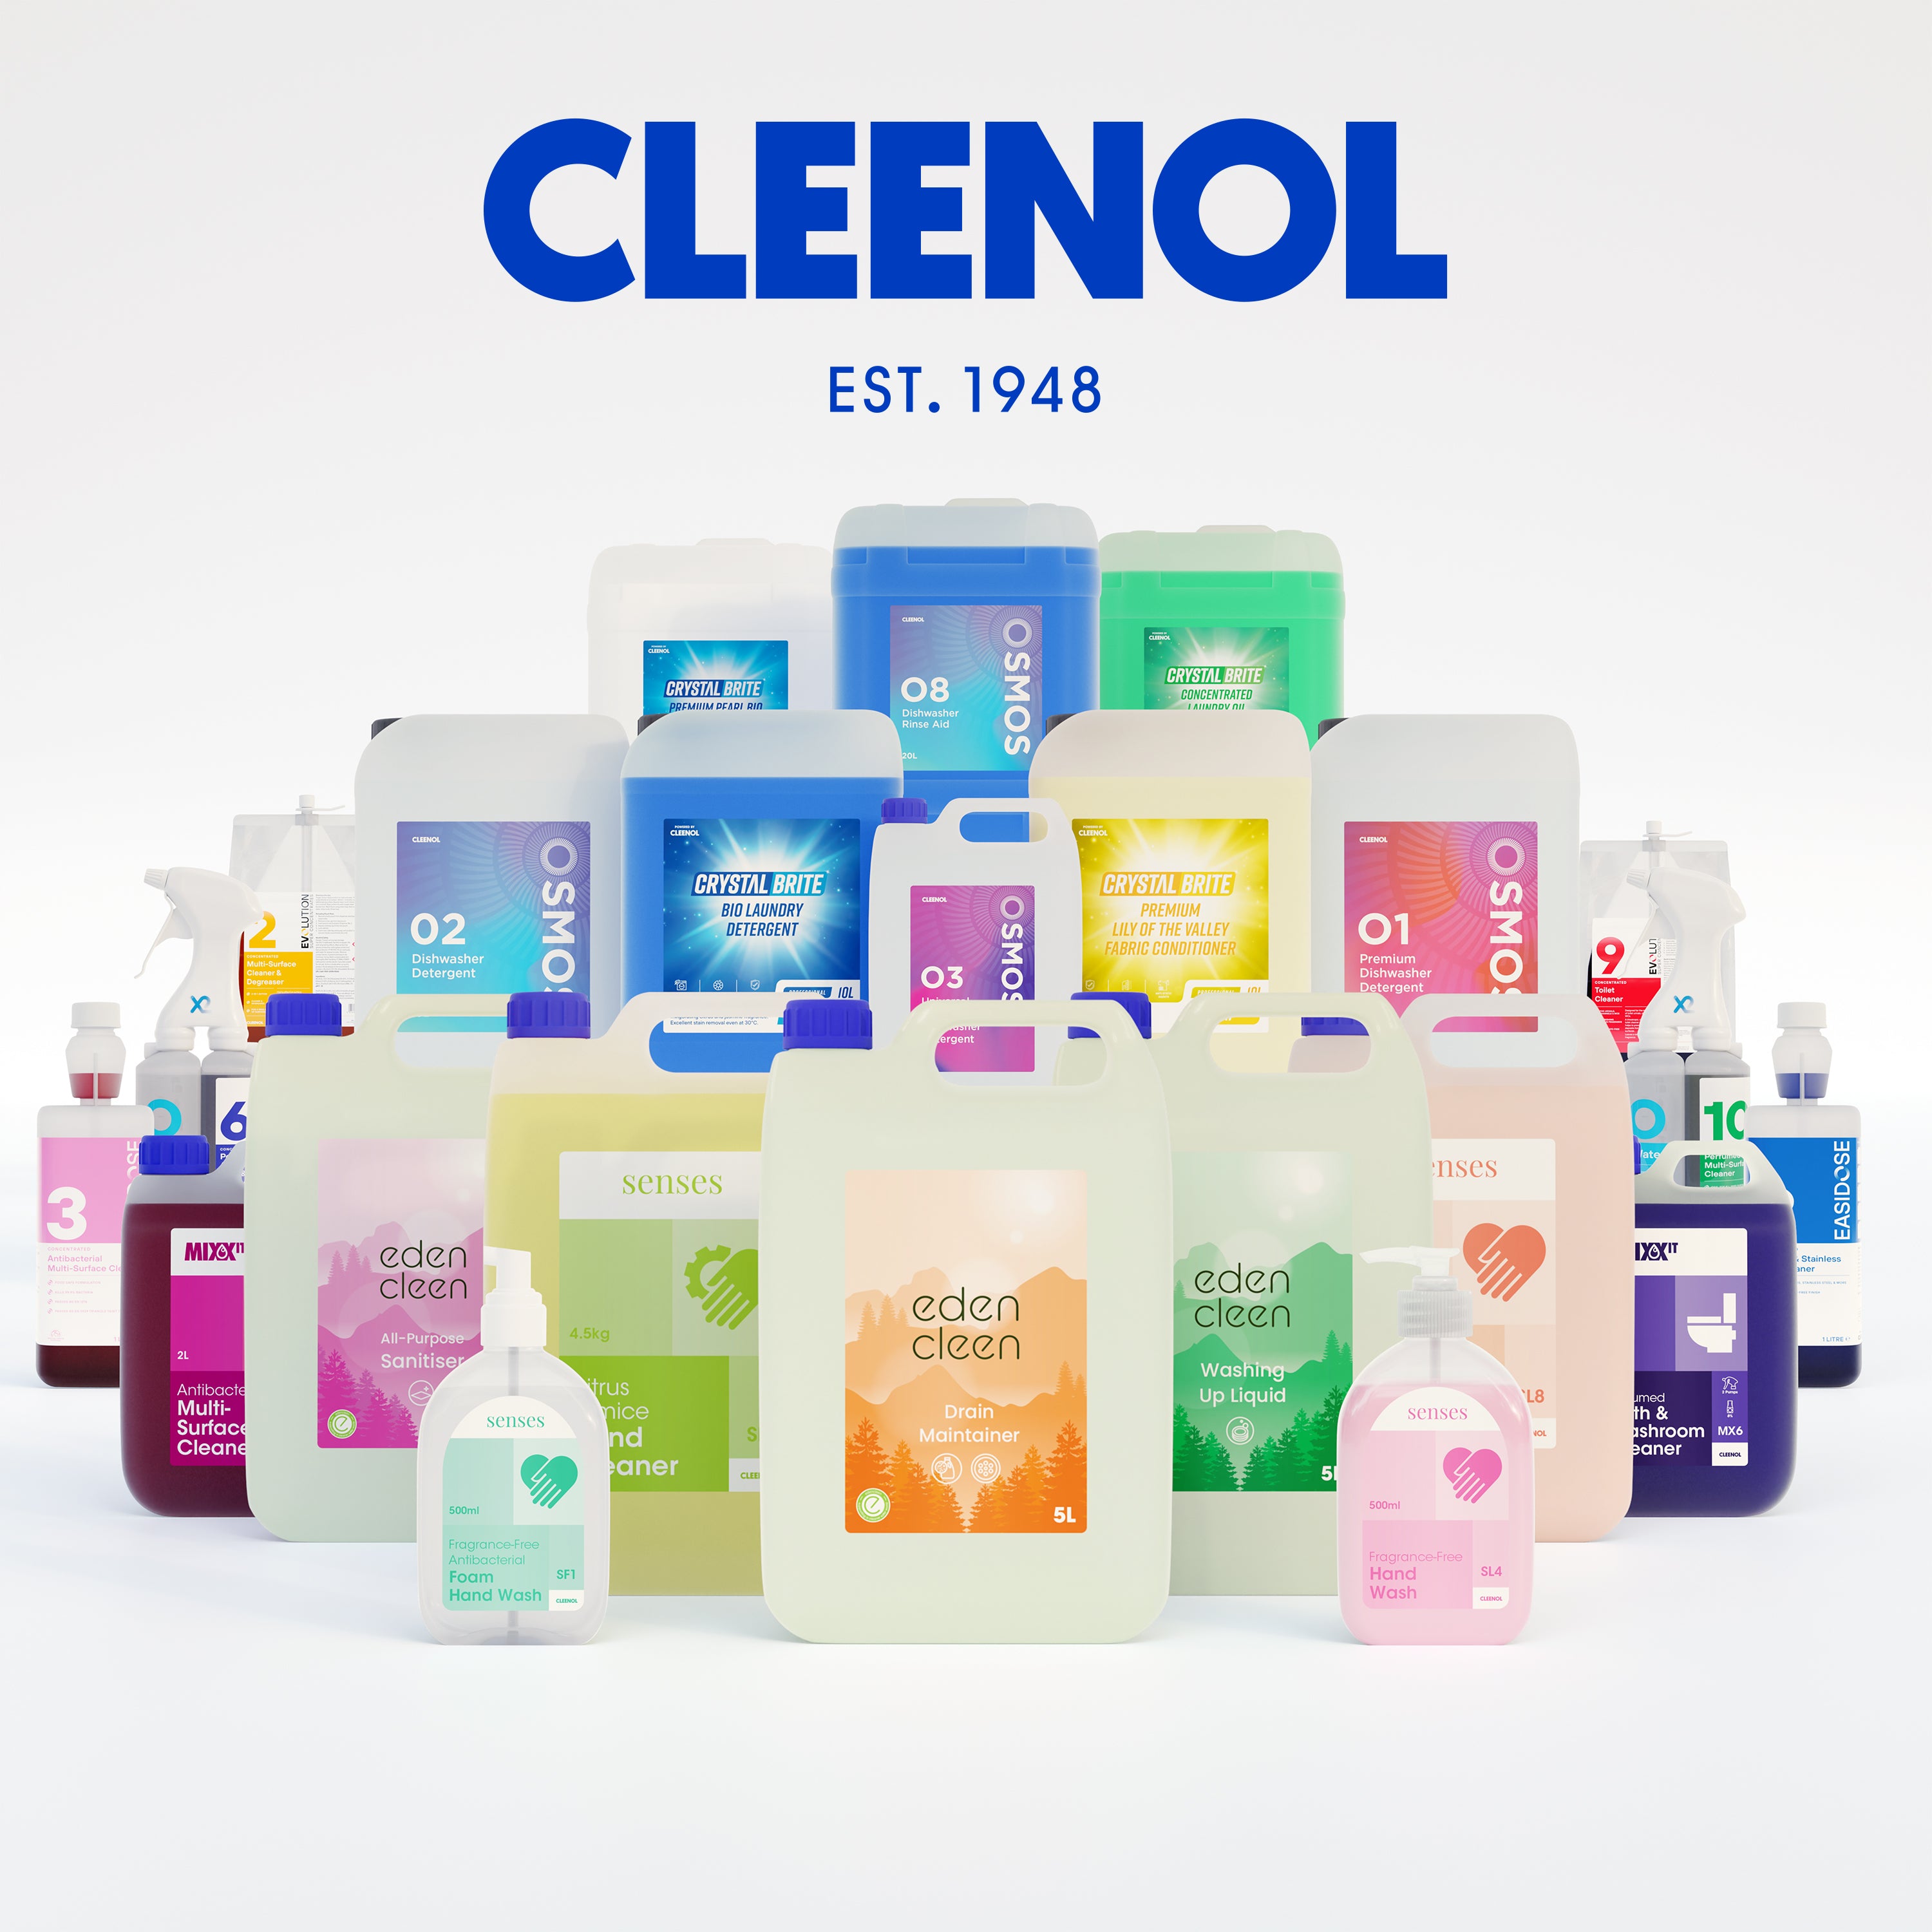 (c) Cleenol.com